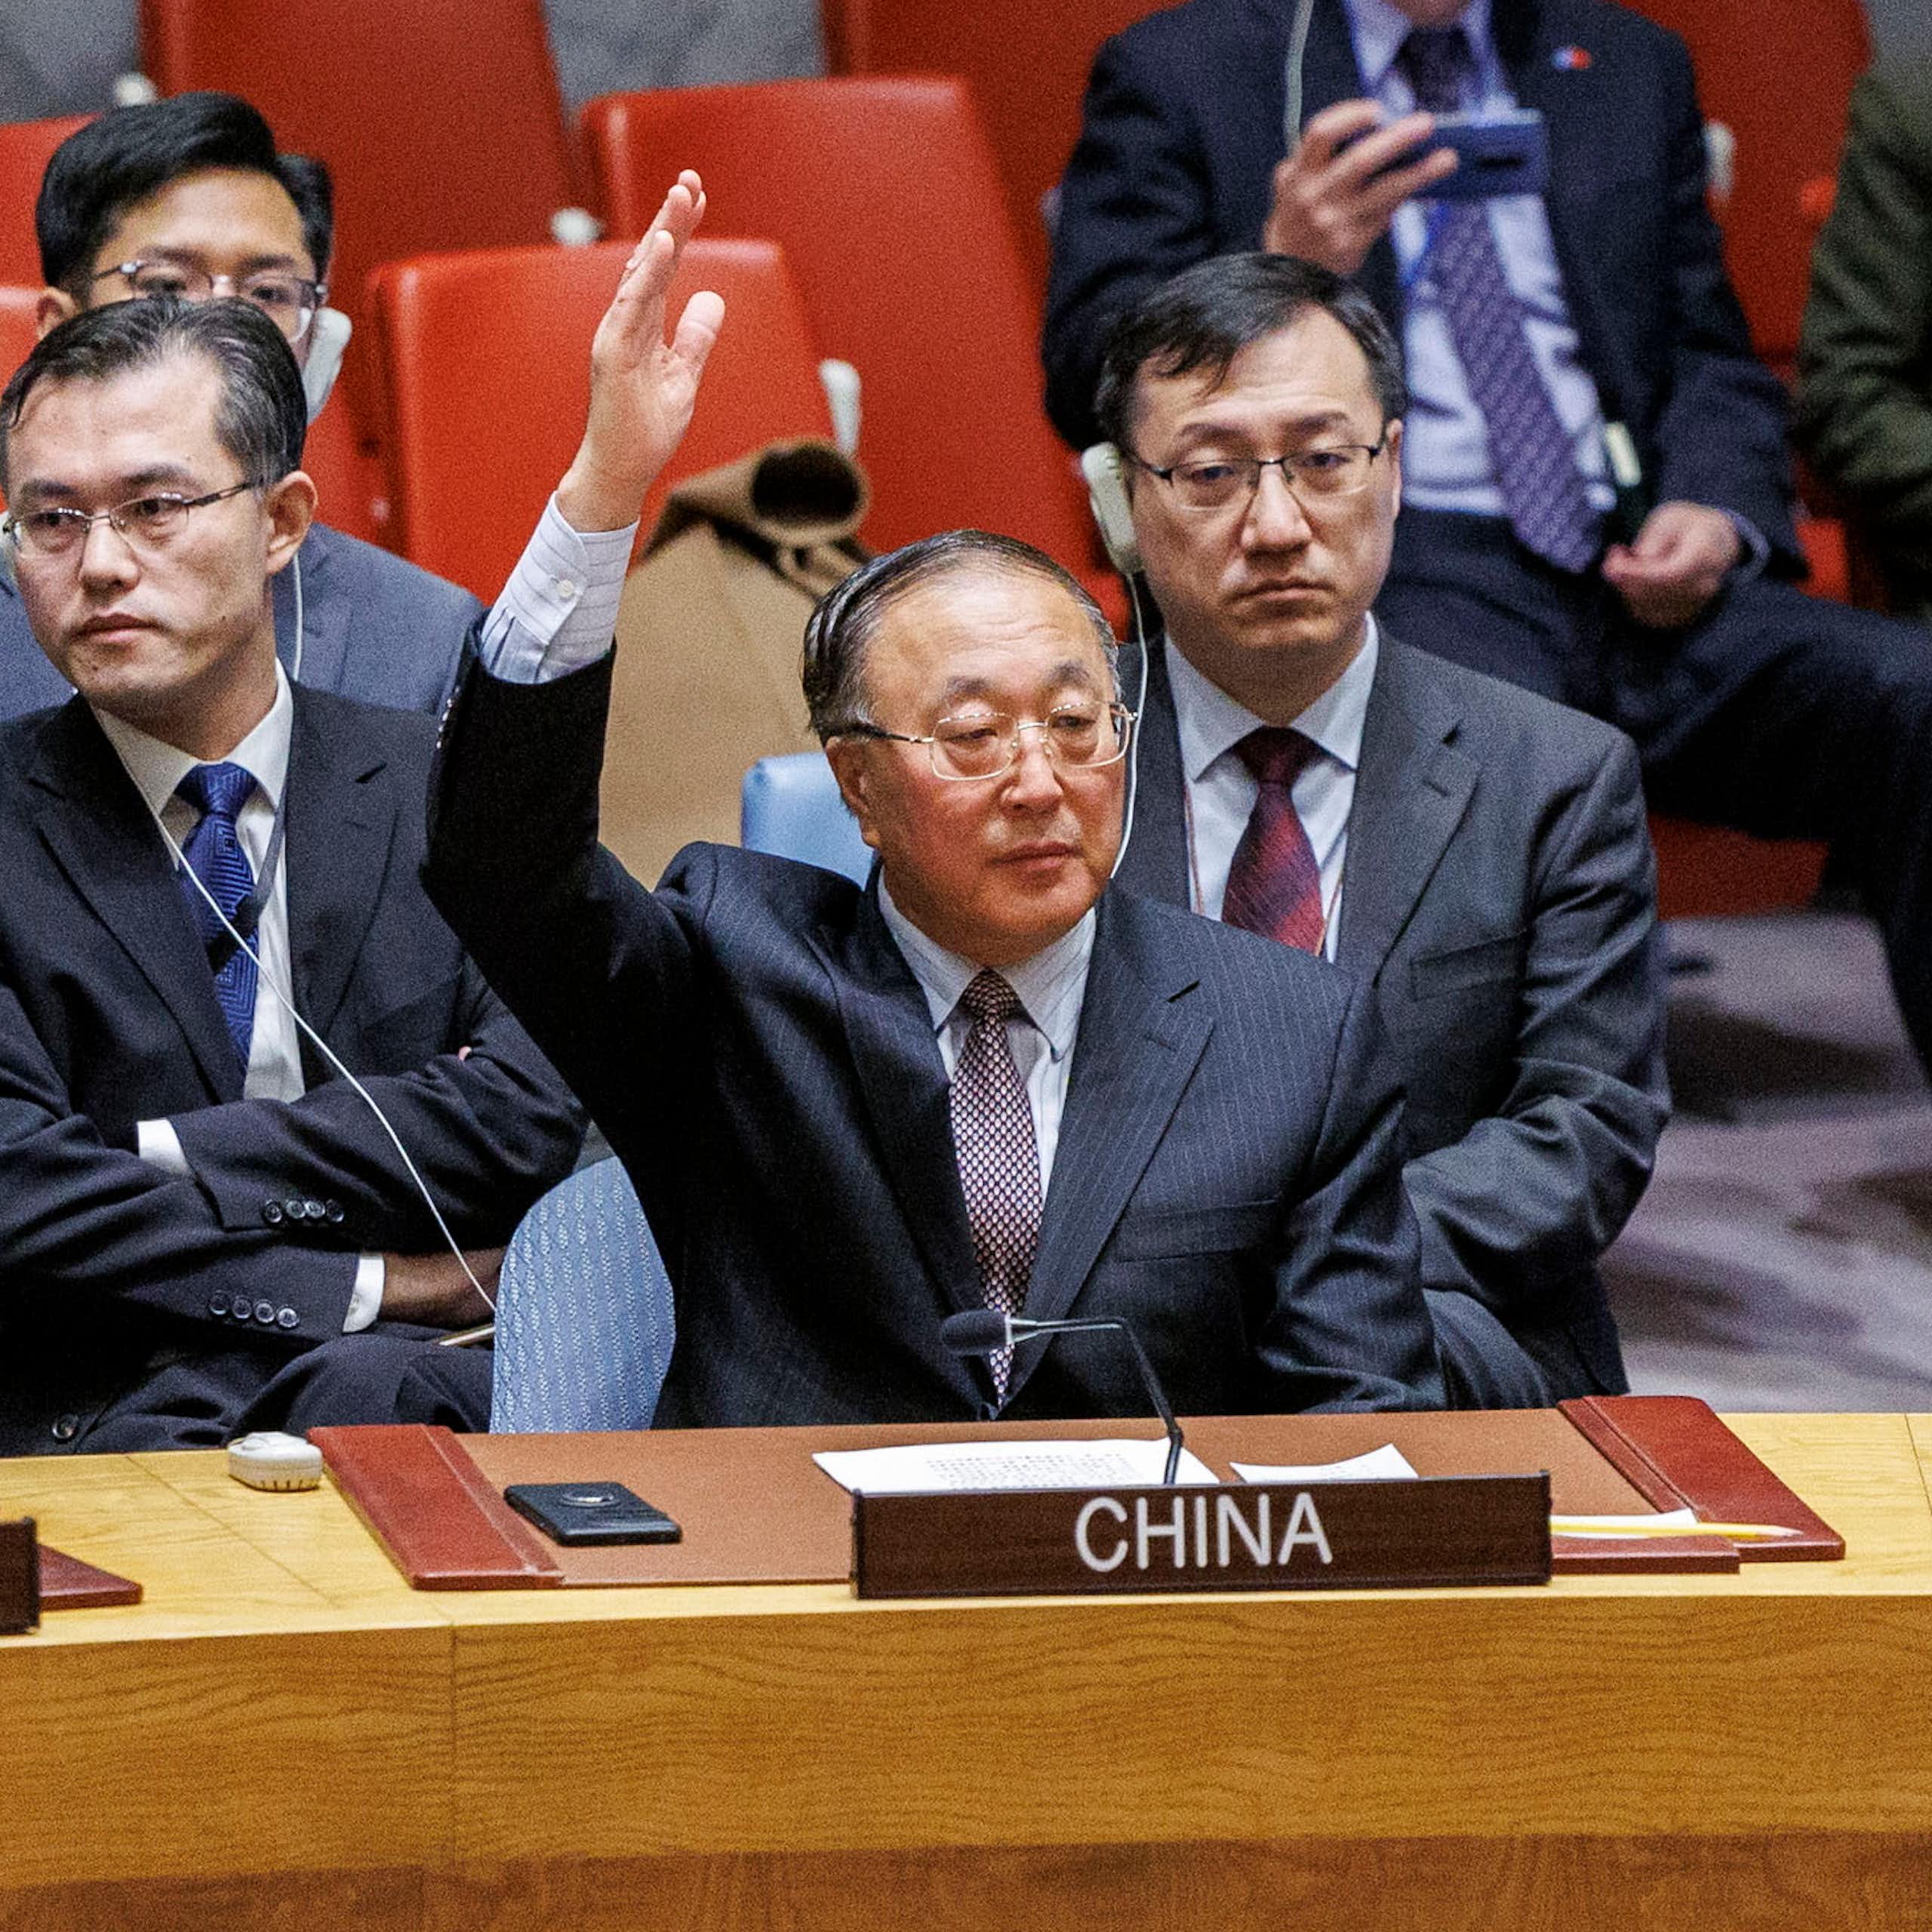 El Consejo de Seguridad de la ONU ha pedido al fin un alto el fuego en Gaza: ¿tendrá algún efecto?